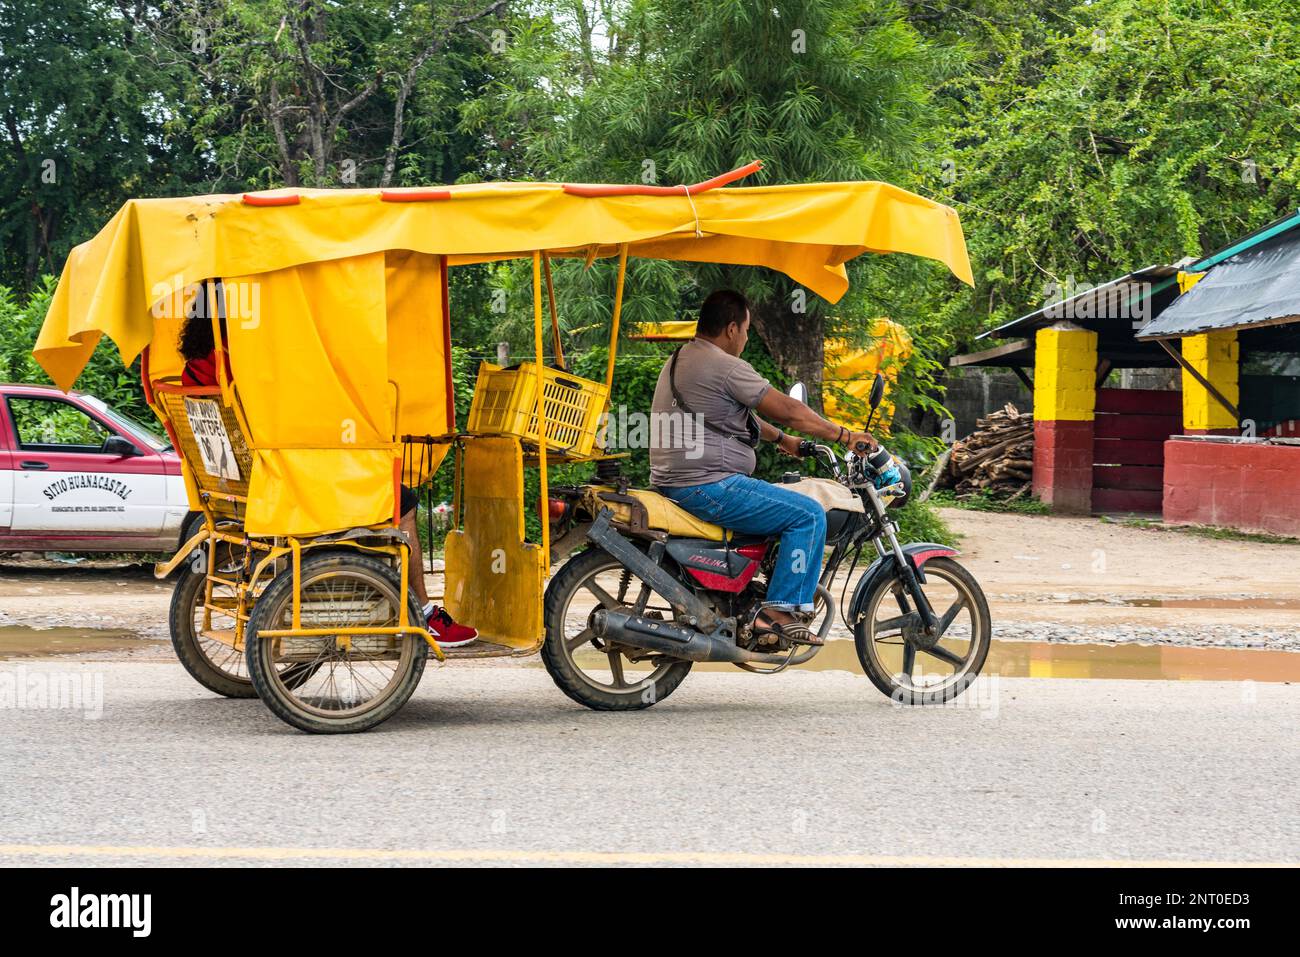 Motorrad-Rikscha-Taxis sind preiswerte öffentliche Verkehrsmittel in der Stadt Santiago Zanatepec im Isthmus von Tehuantepec im Süden von Oaxaca, Mex Stockfoto